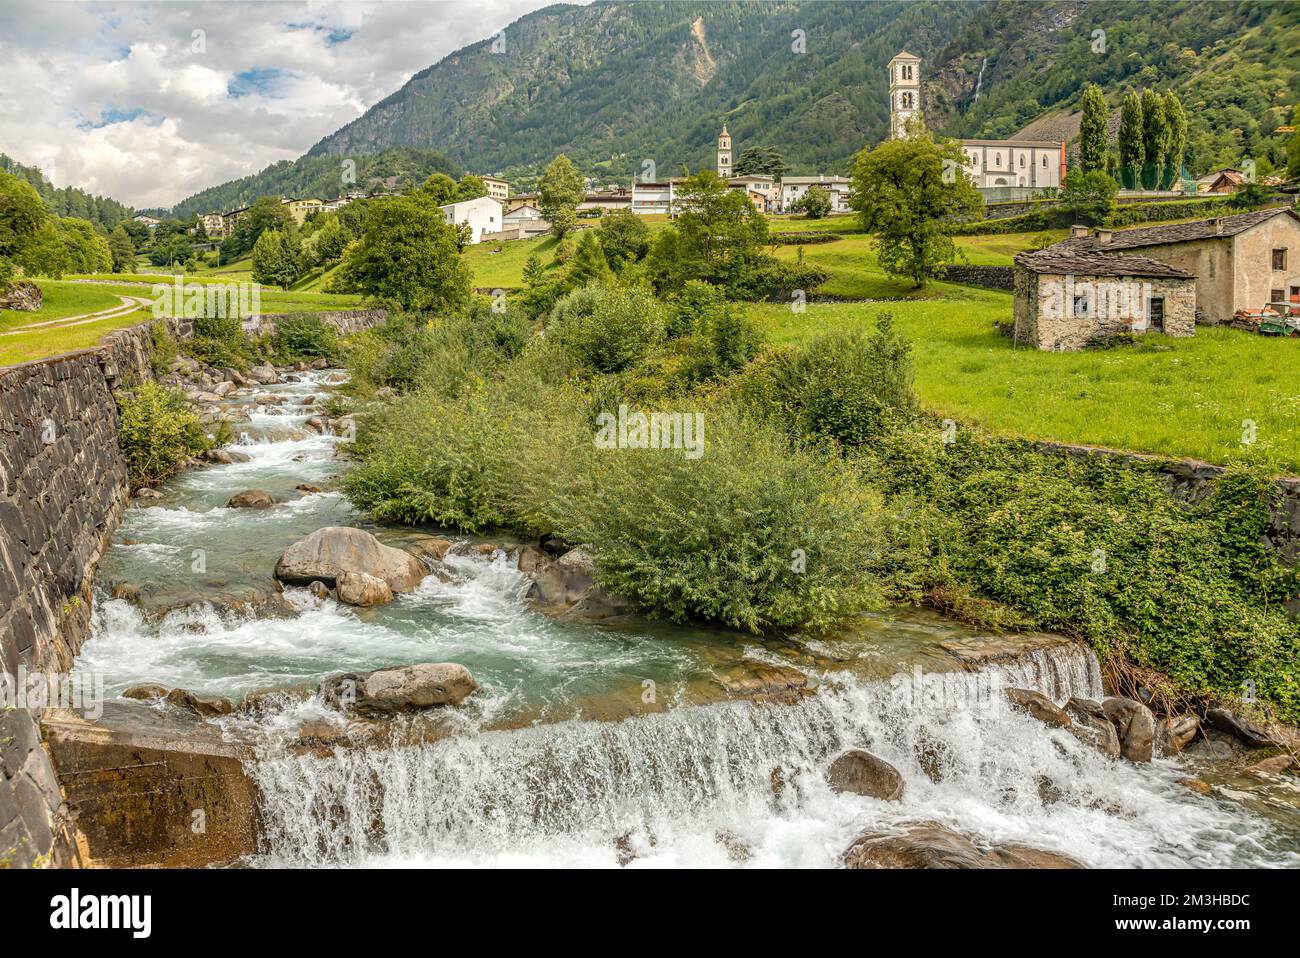 Poschiavino River at the Valposchaivo Valley at Brusio, Switzerland Stock Photo